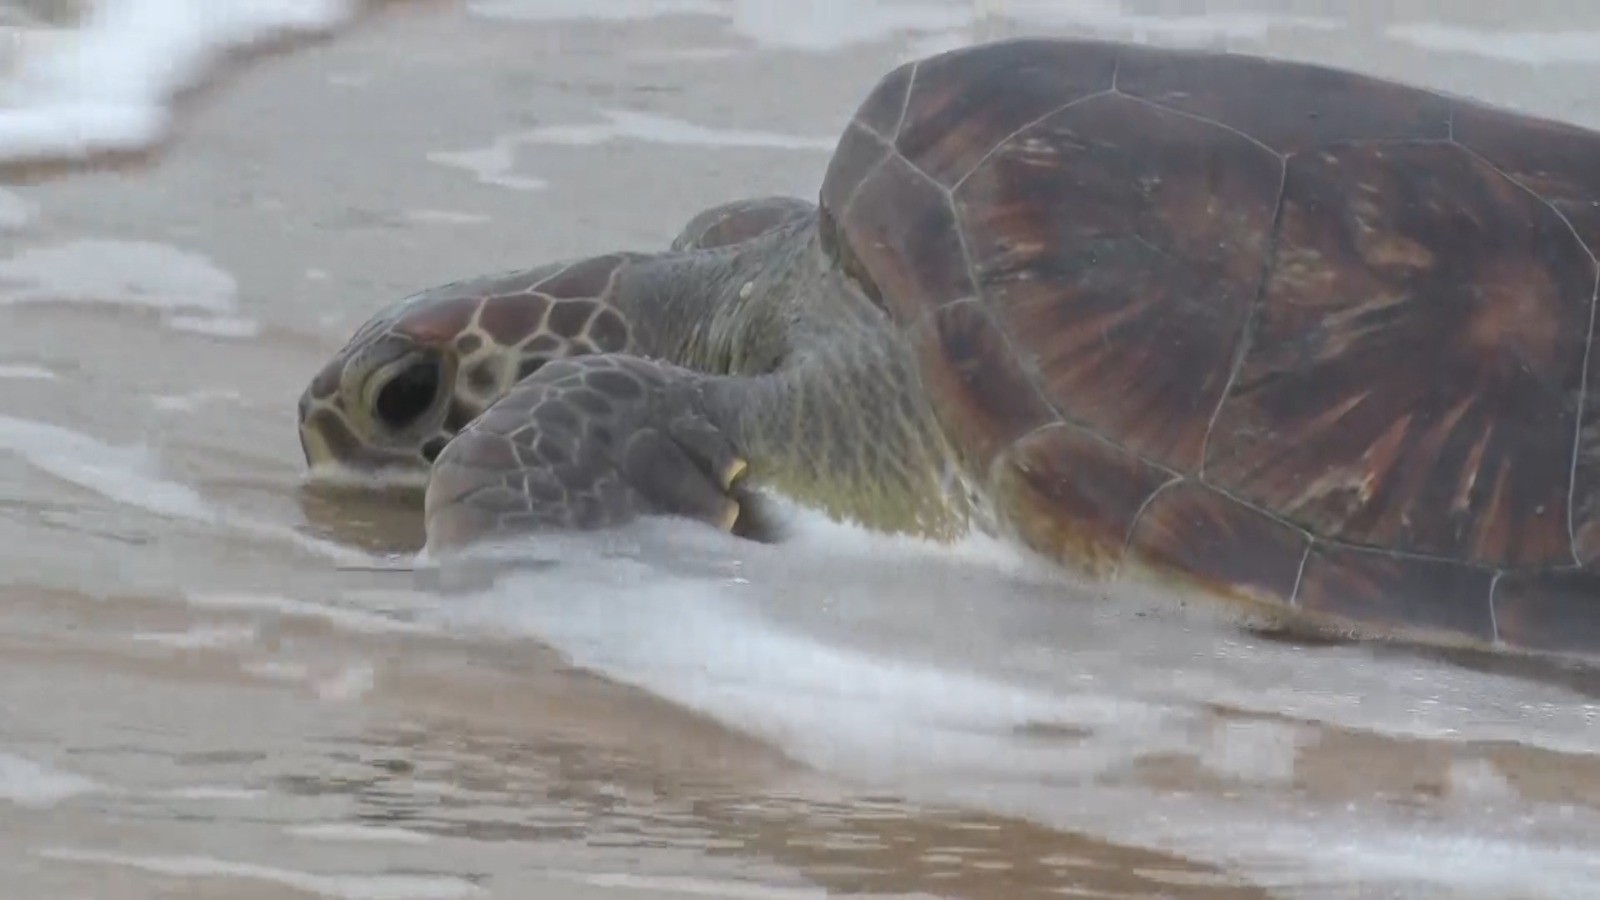 Ninhos de tartarugas são monitorados no extremo sul da Bahia após roubos de ovos em pontos de desova